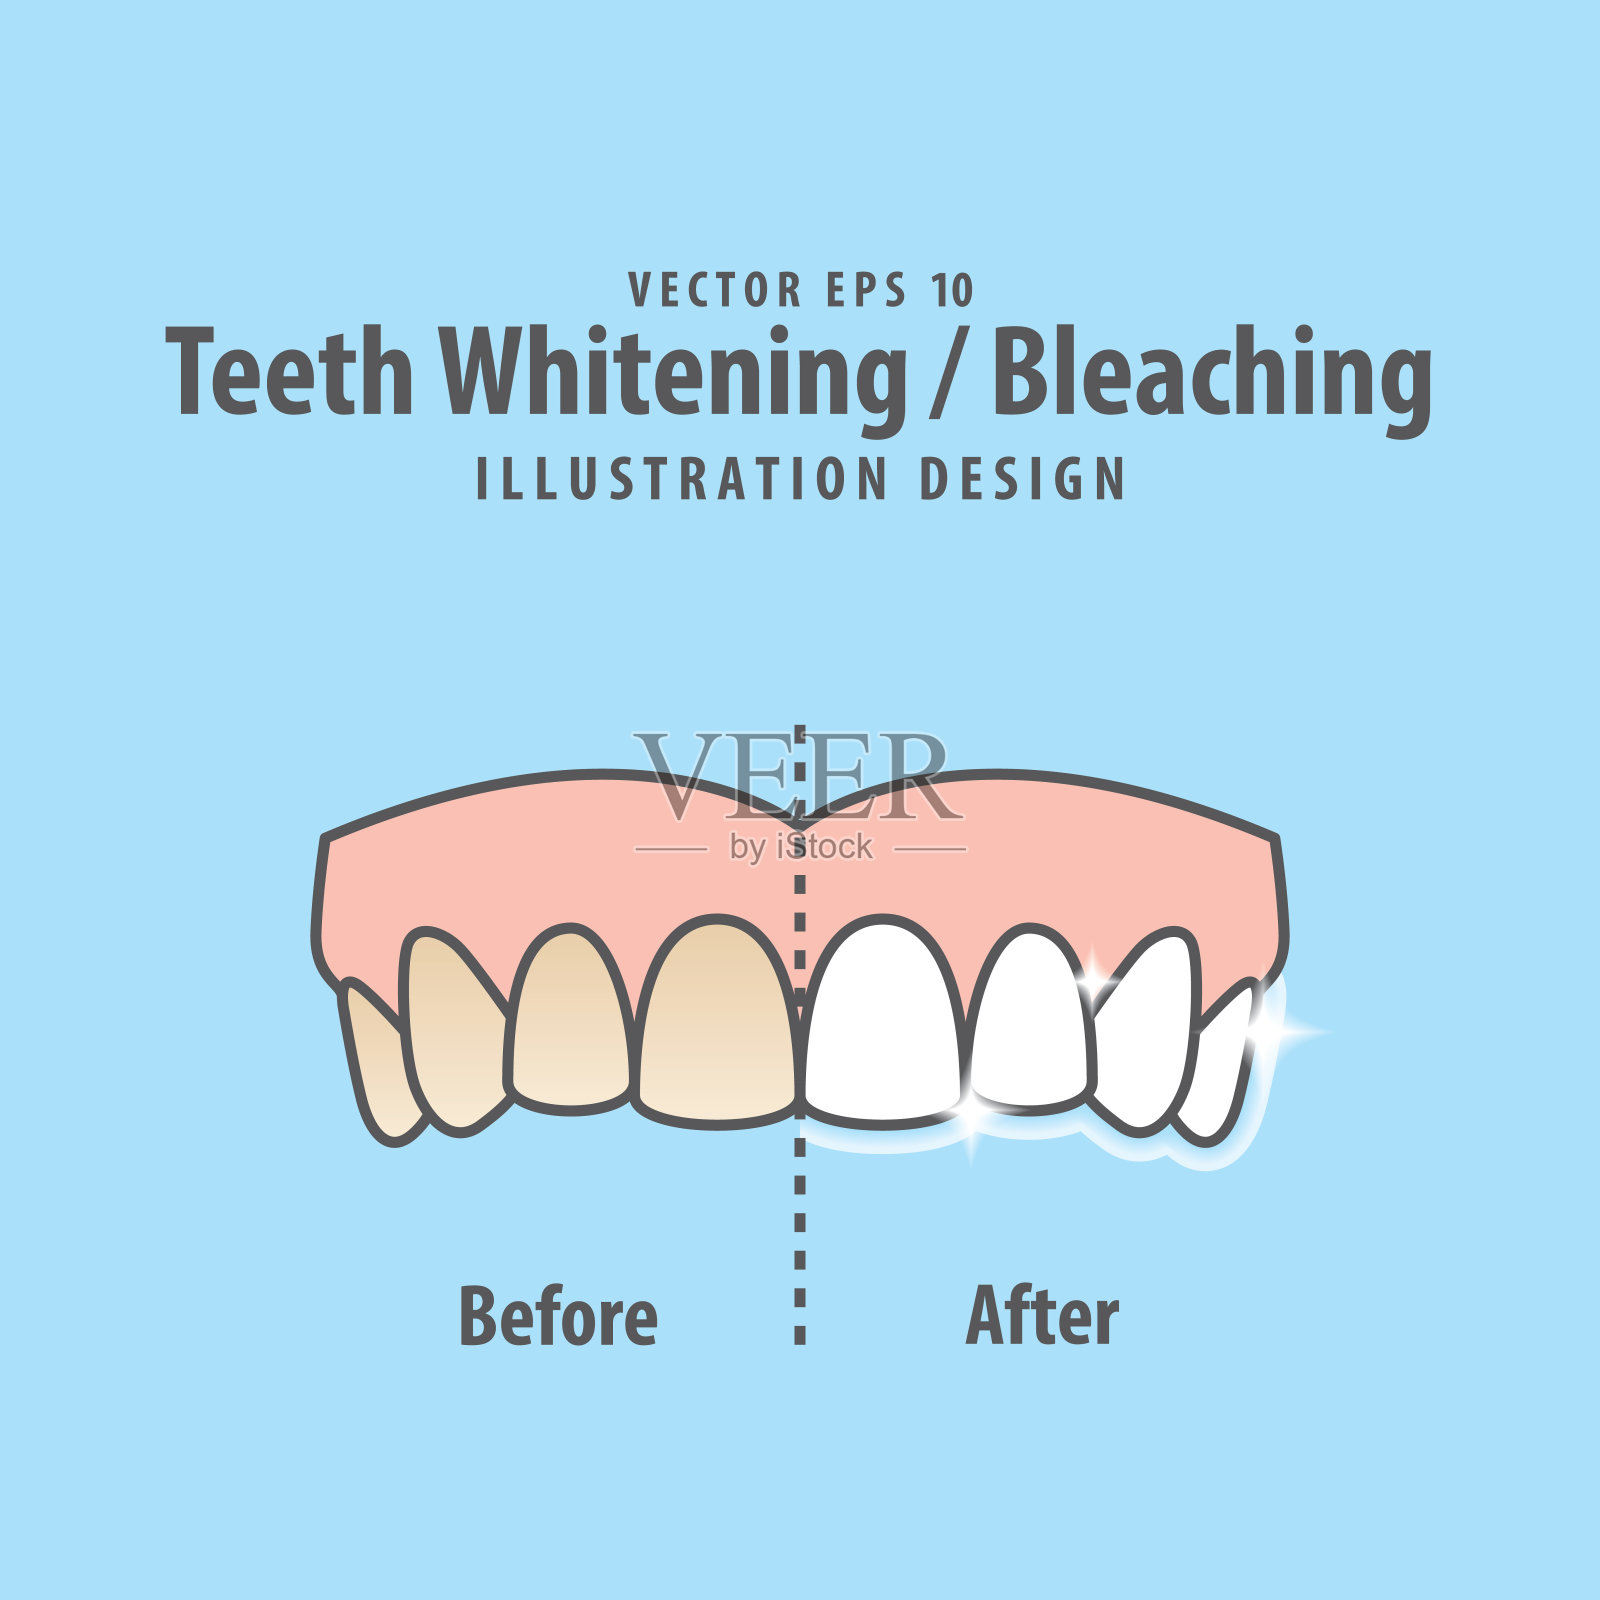 比较上牙漂白-漂白之前和之后的插图矢量在蓝色背景。牙科的概念。插画图片素材